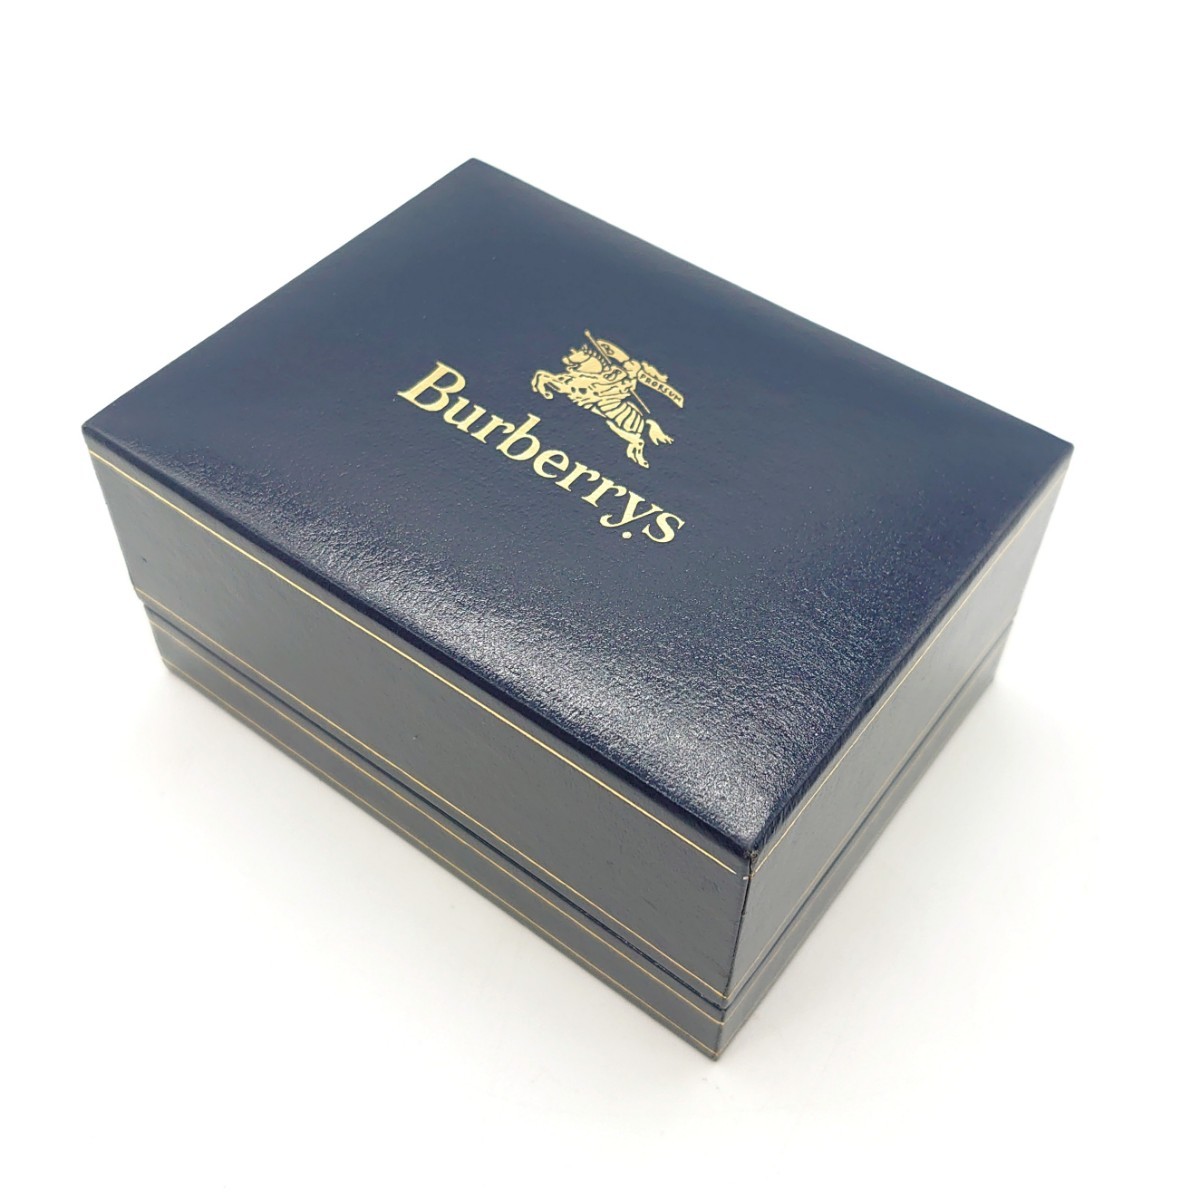 Burberrys バーバリーズ BUA01 5530-F52339 アナログ 腕時計 クォーツ ステンレス ブランド ロゴ 当時物 ヴィンテージ ジャンク dn-23x854_画像7